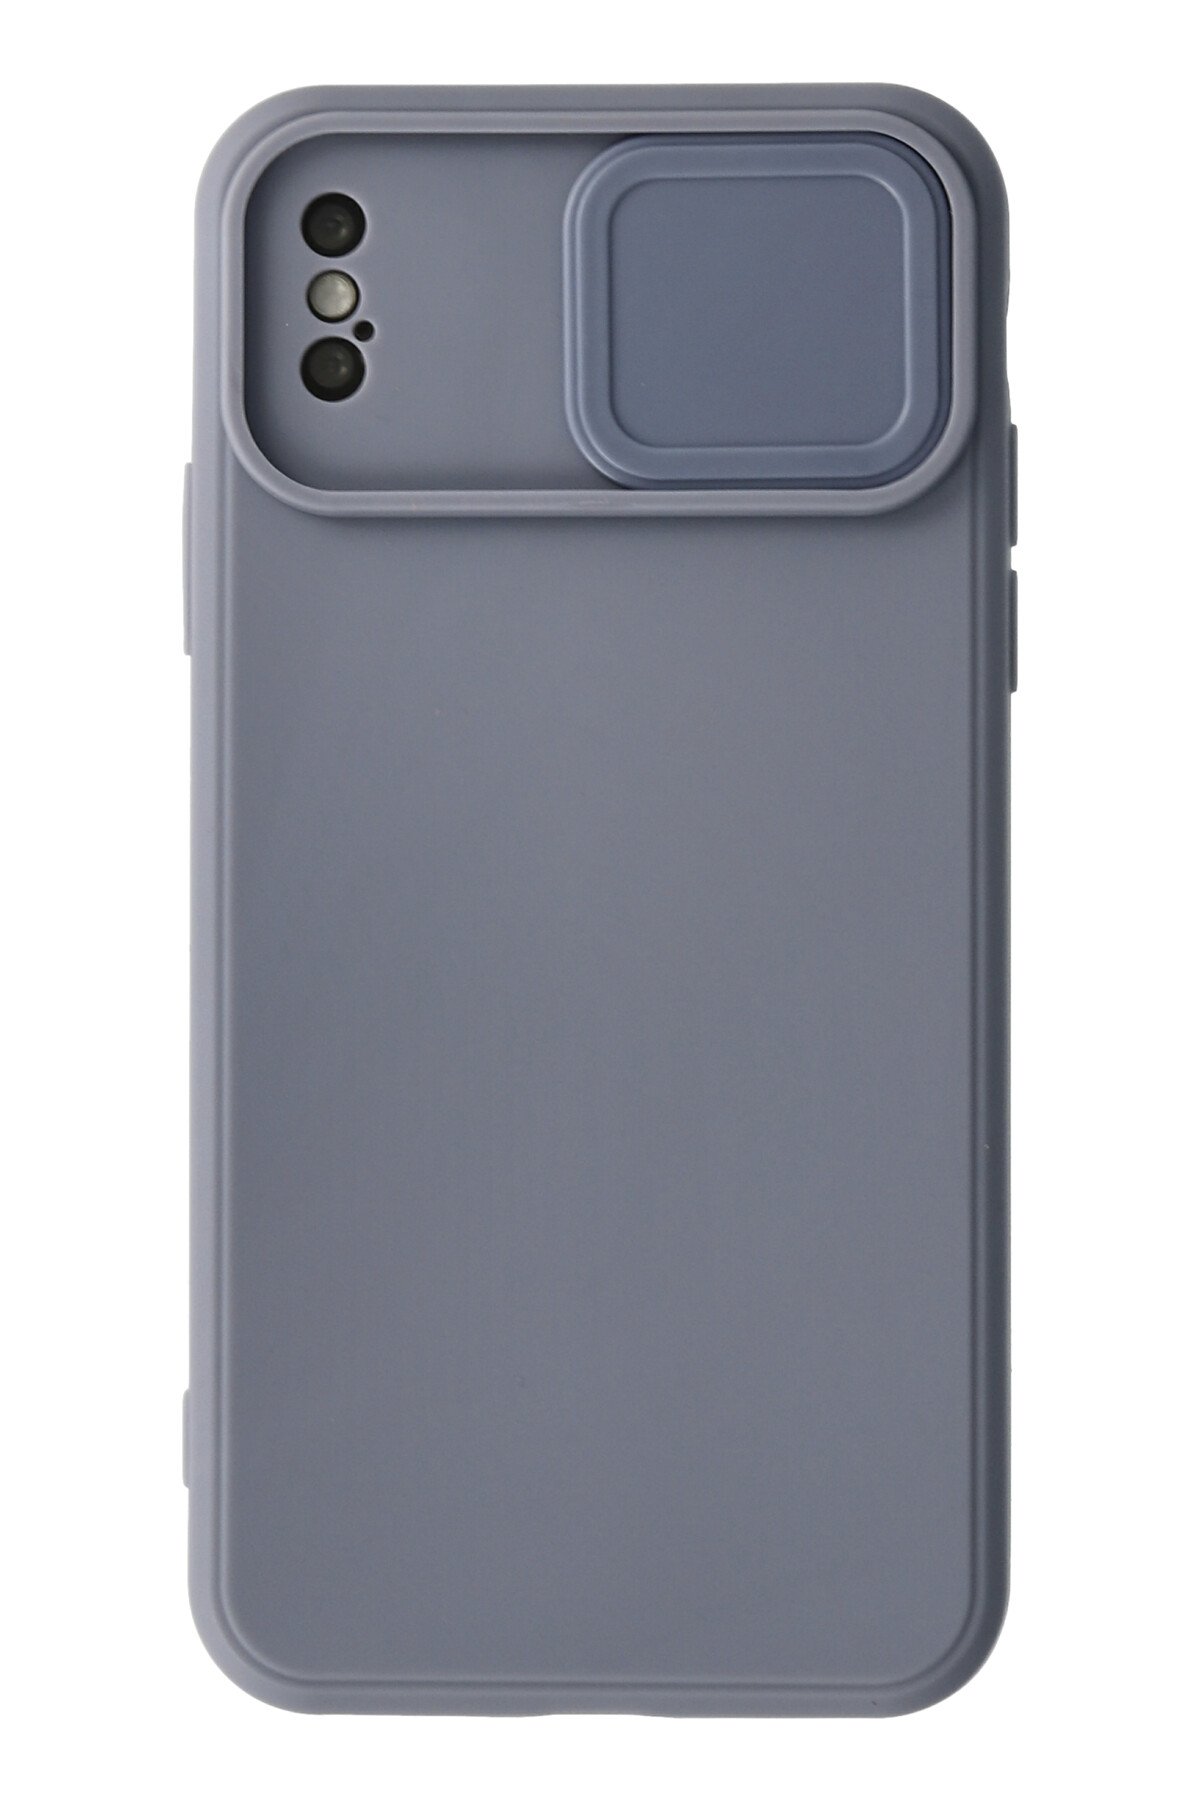 Newface iPhone X Kılıf Nano içi Kadife Silikon - Lacivert